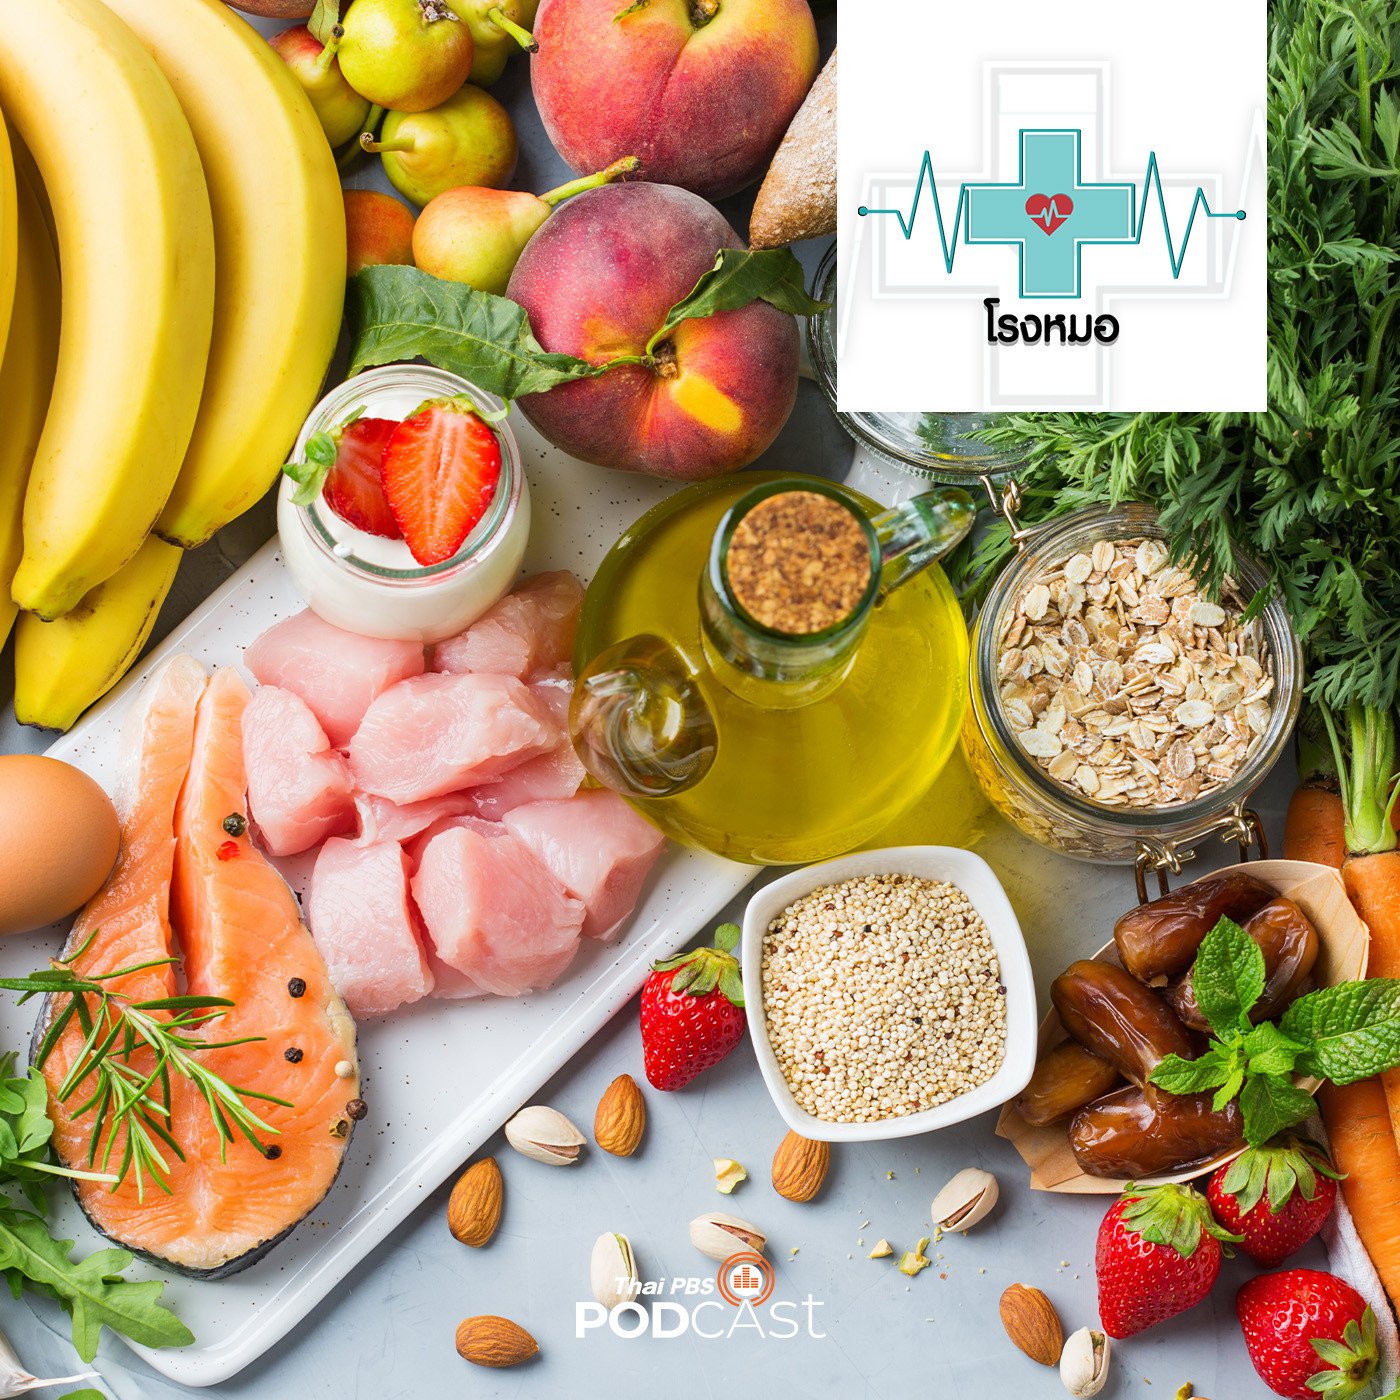 โรงหมอ EP. 766: กินอาหารตามวัยเพื่อสุขภาพ